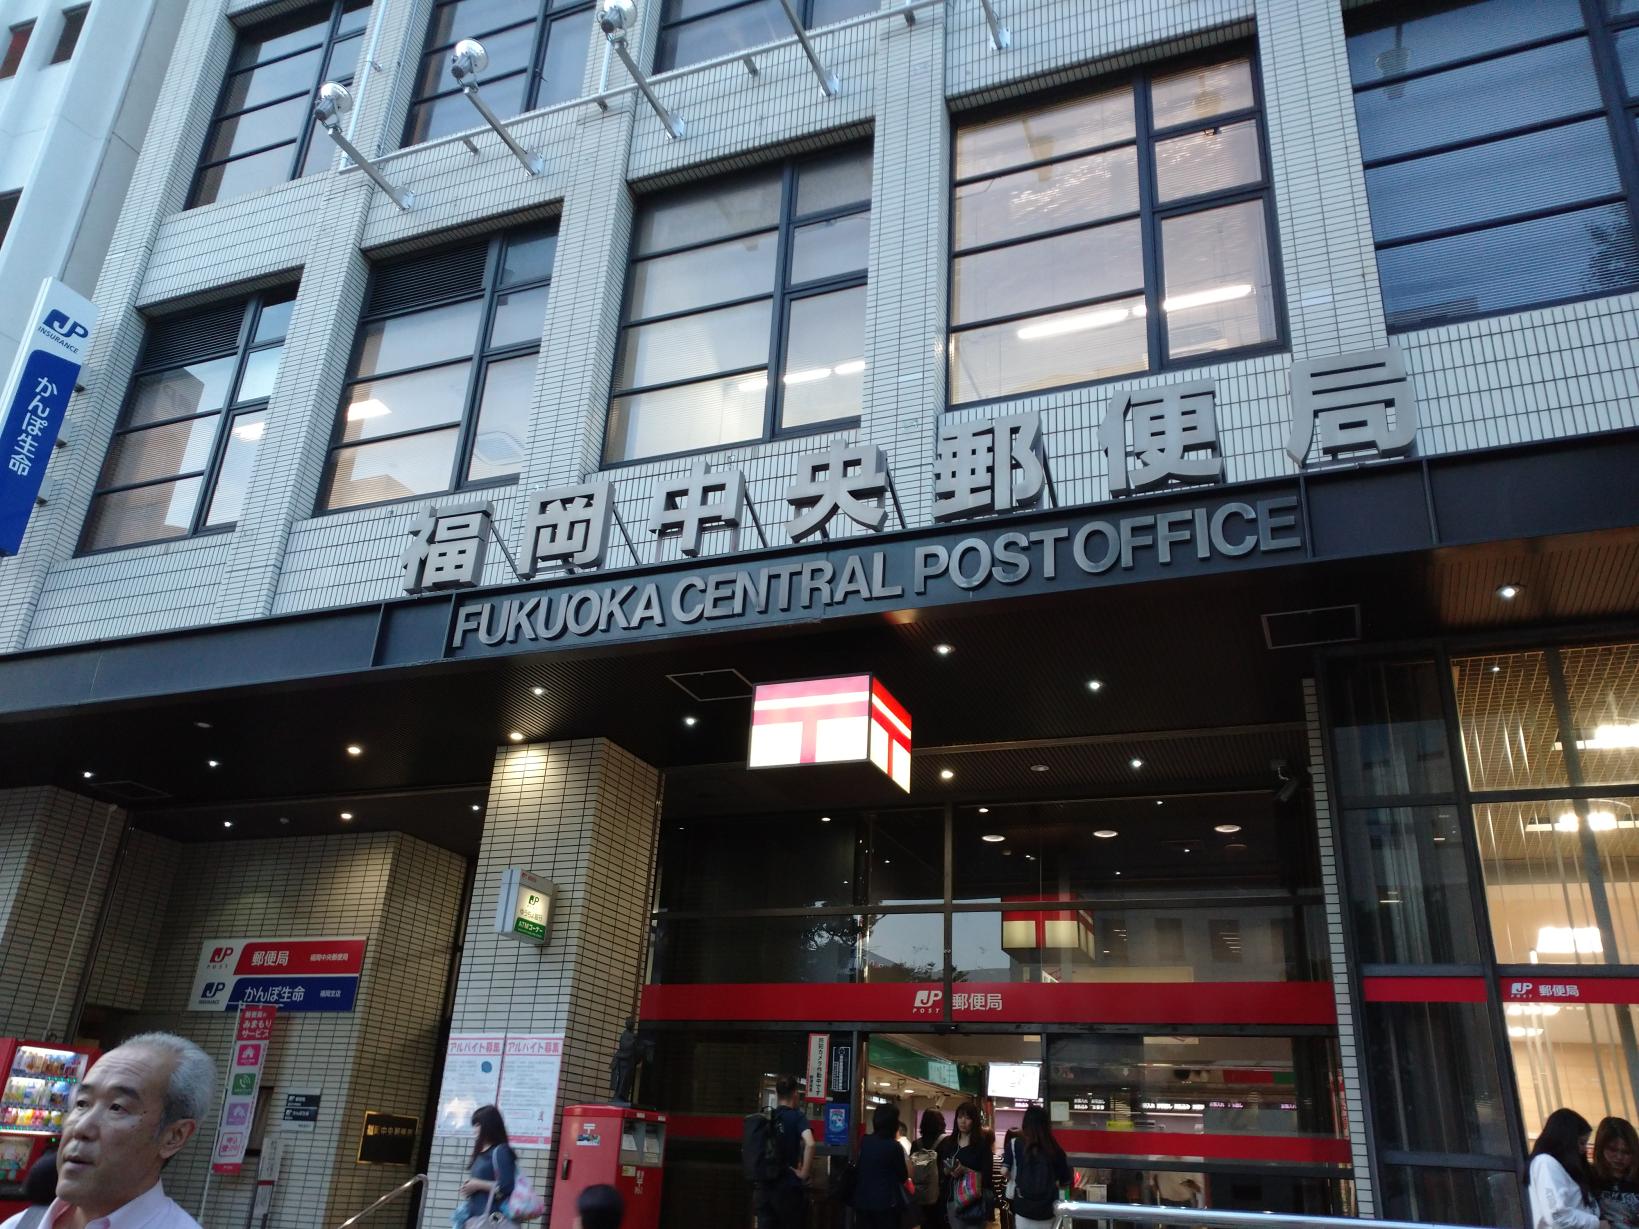 Fukuoka Central Post Office